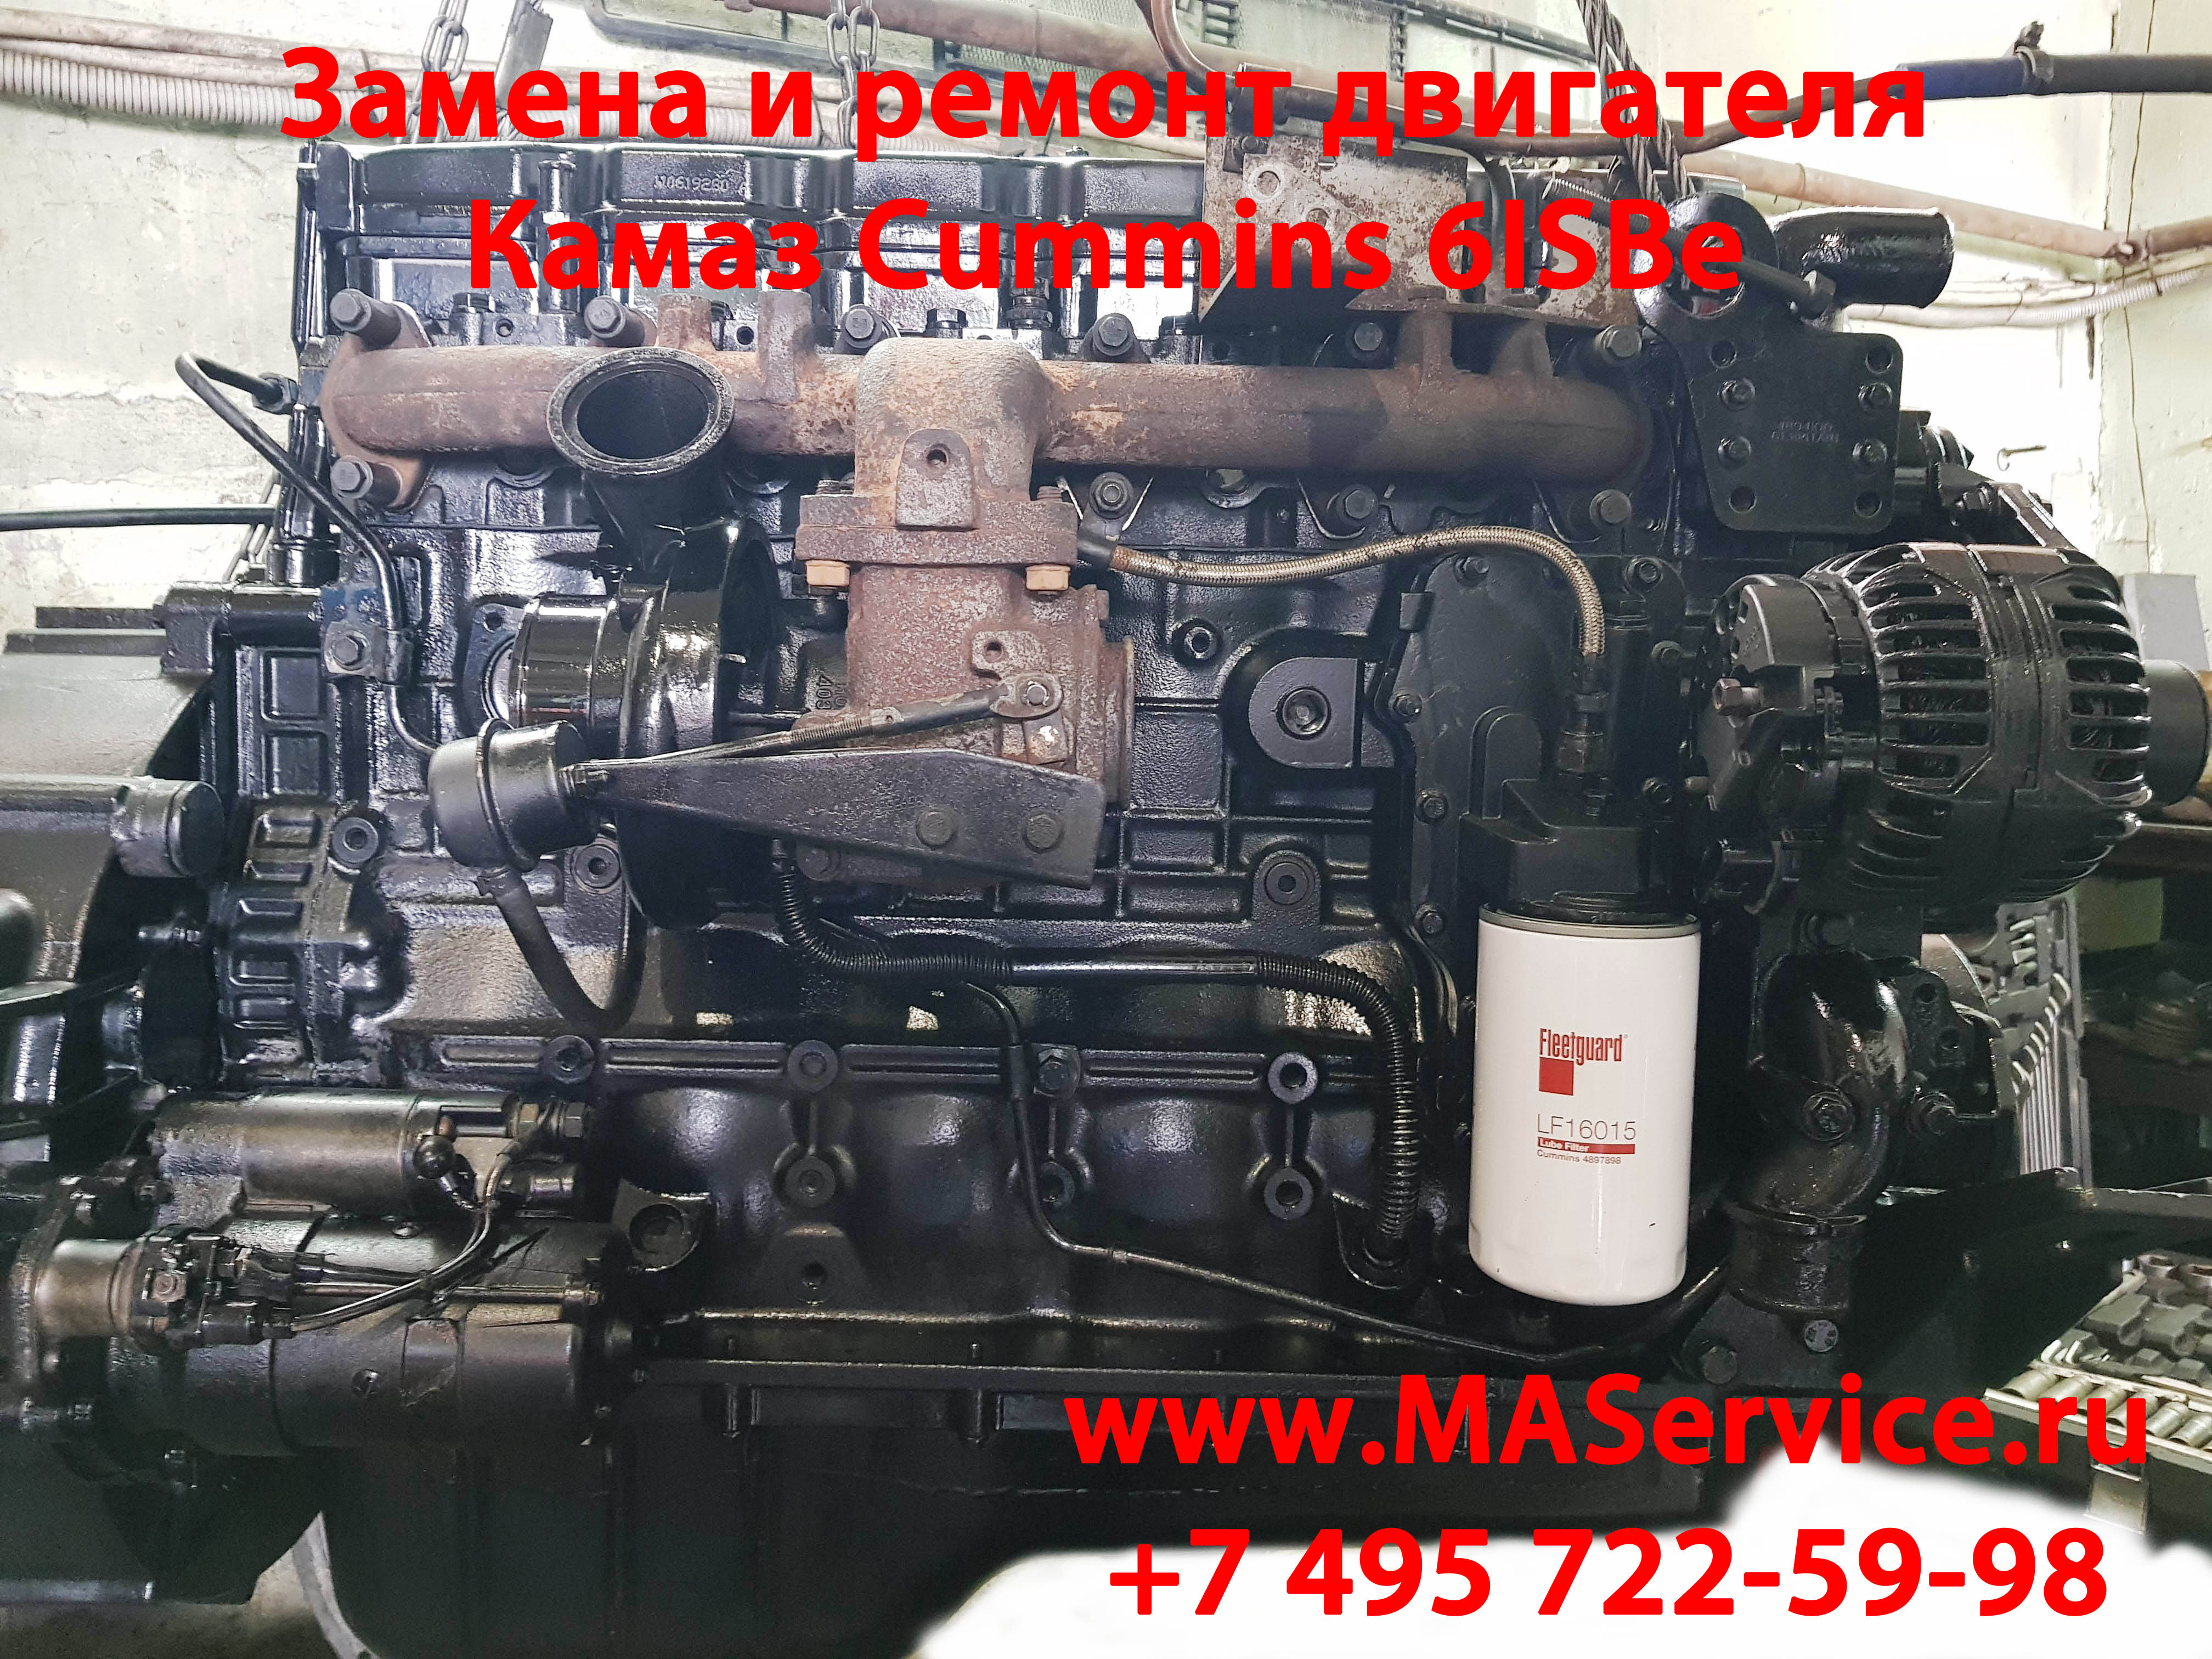 Капитальный ремонт двигателя Сummins 6iSbe 300, Сummins 6iSbe 275